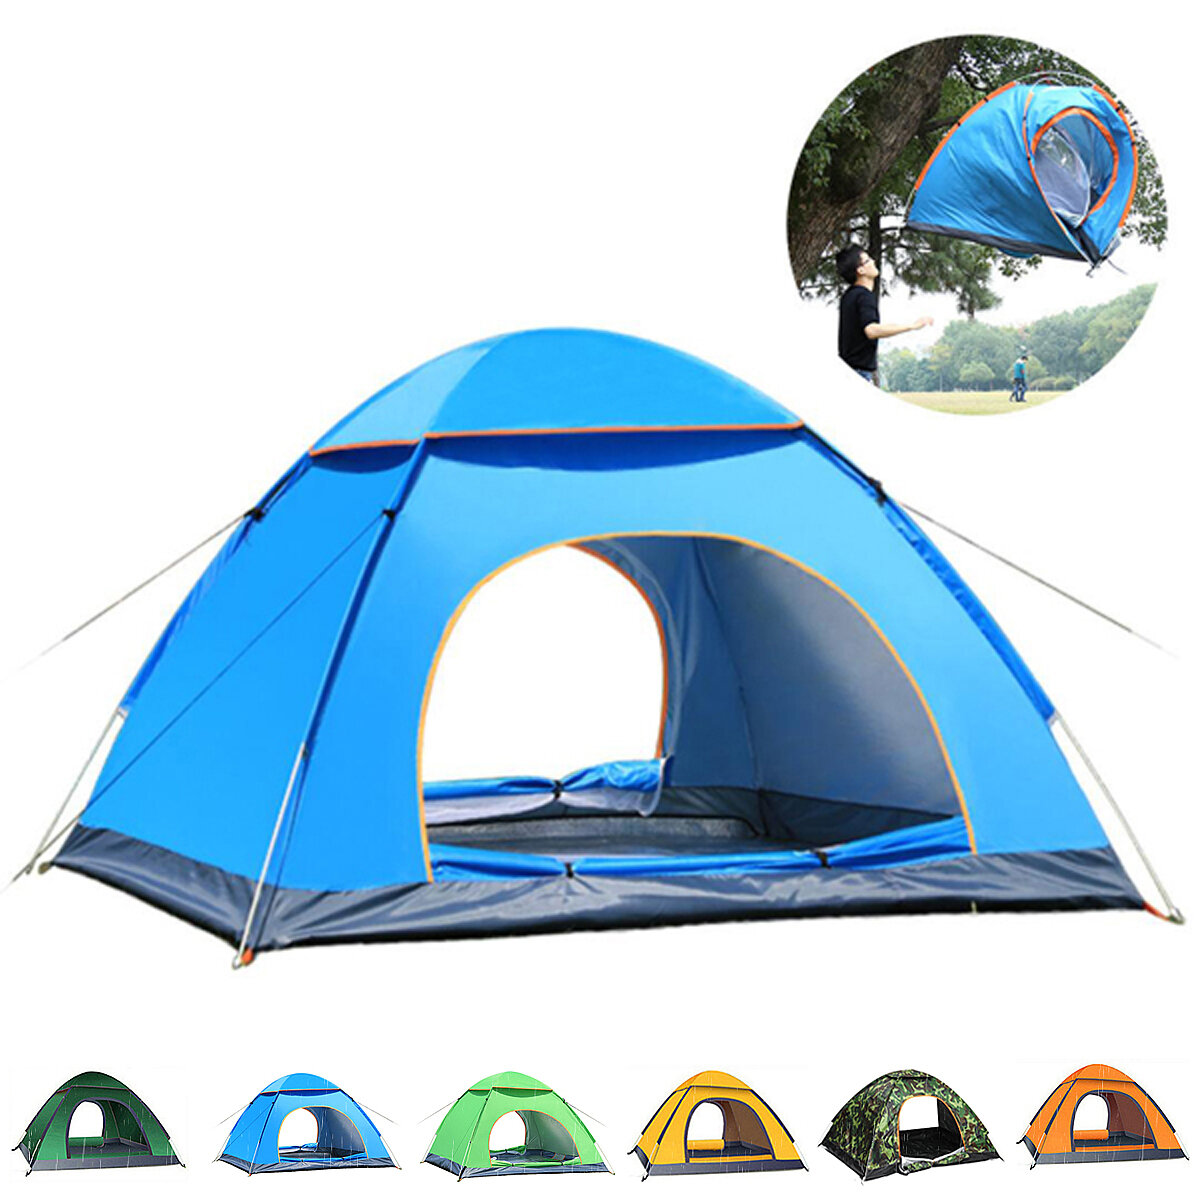 o: Tenda da campeggio automatica per 2-3 persone con 2 porte, traspirante, impermeabile, con protezione UV, tenda parasole per esterno, per viaggi e spiaggia.